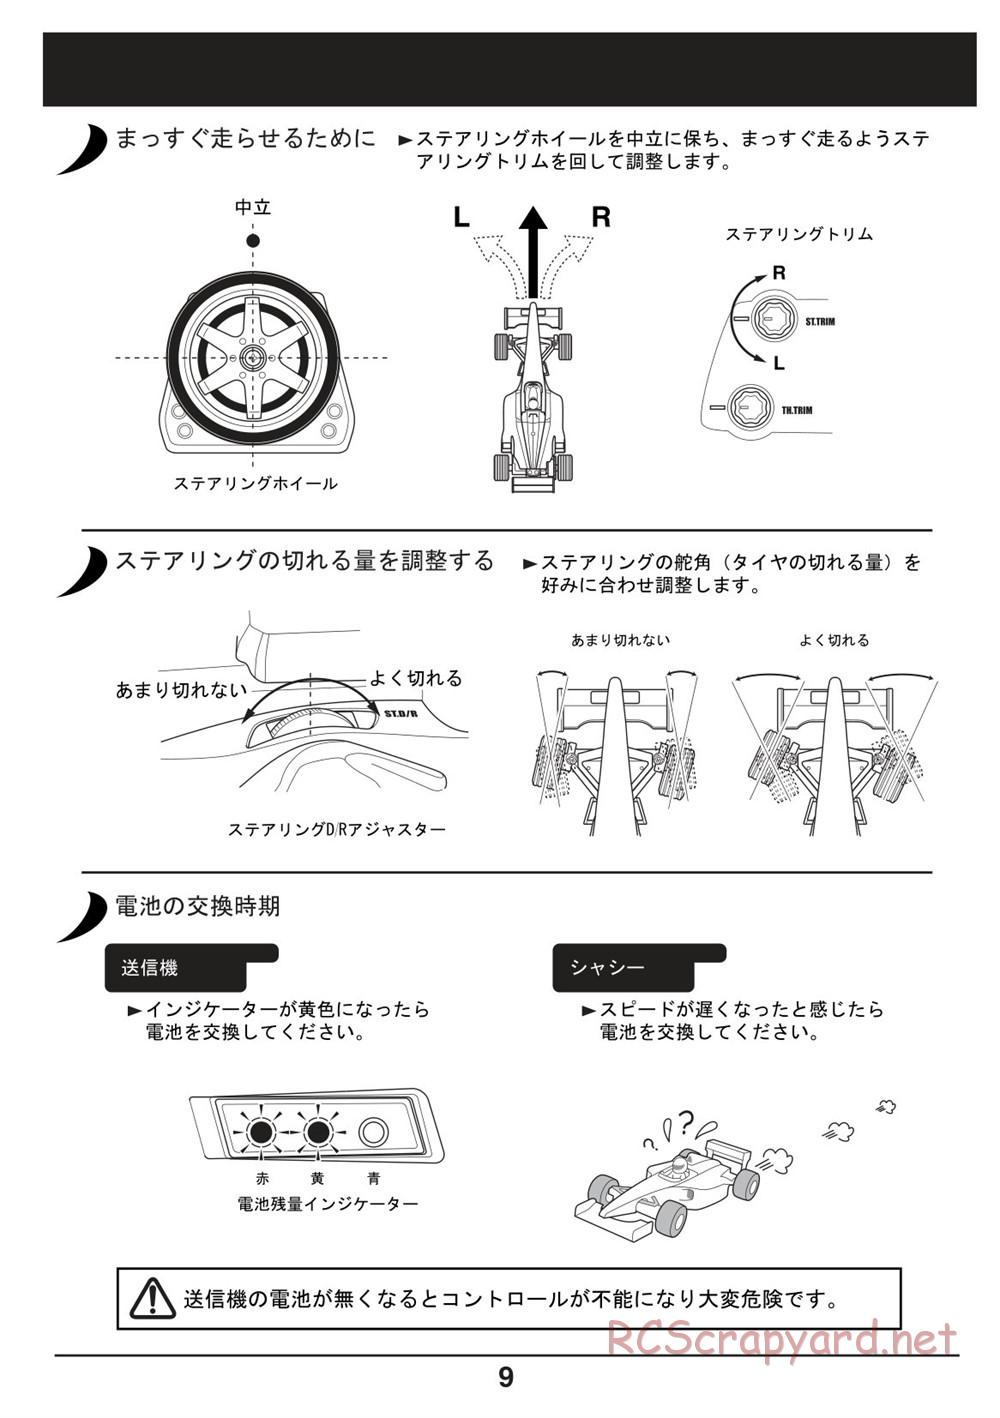 Kyosho - Mini-Z F1 - Manual - Page 9